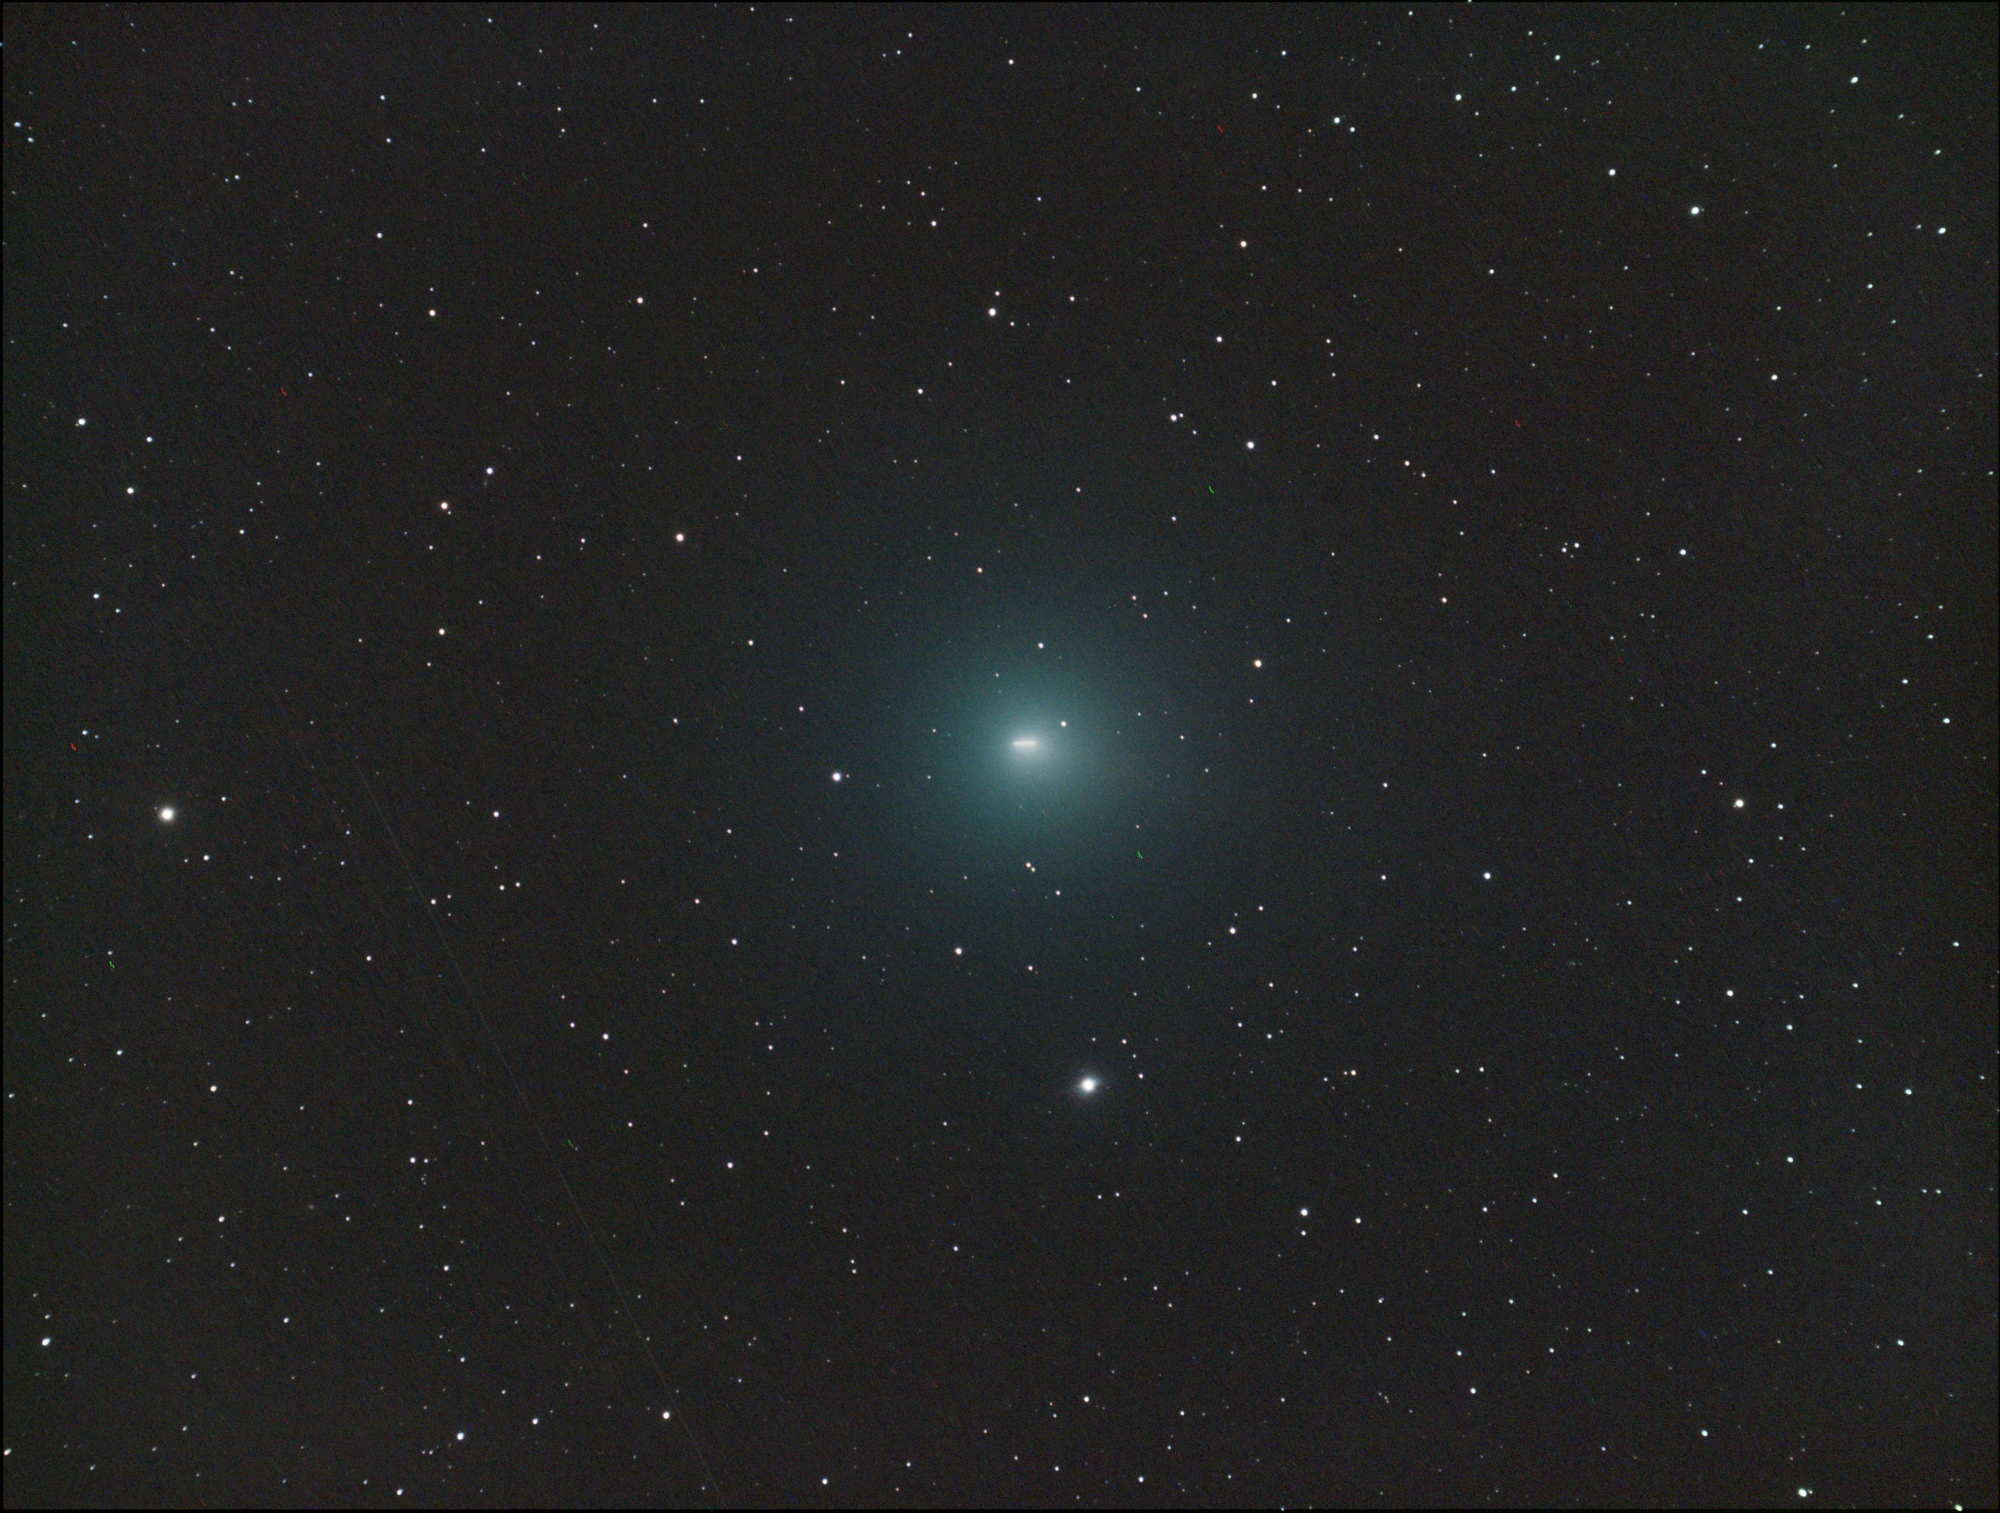 comet1.jpg